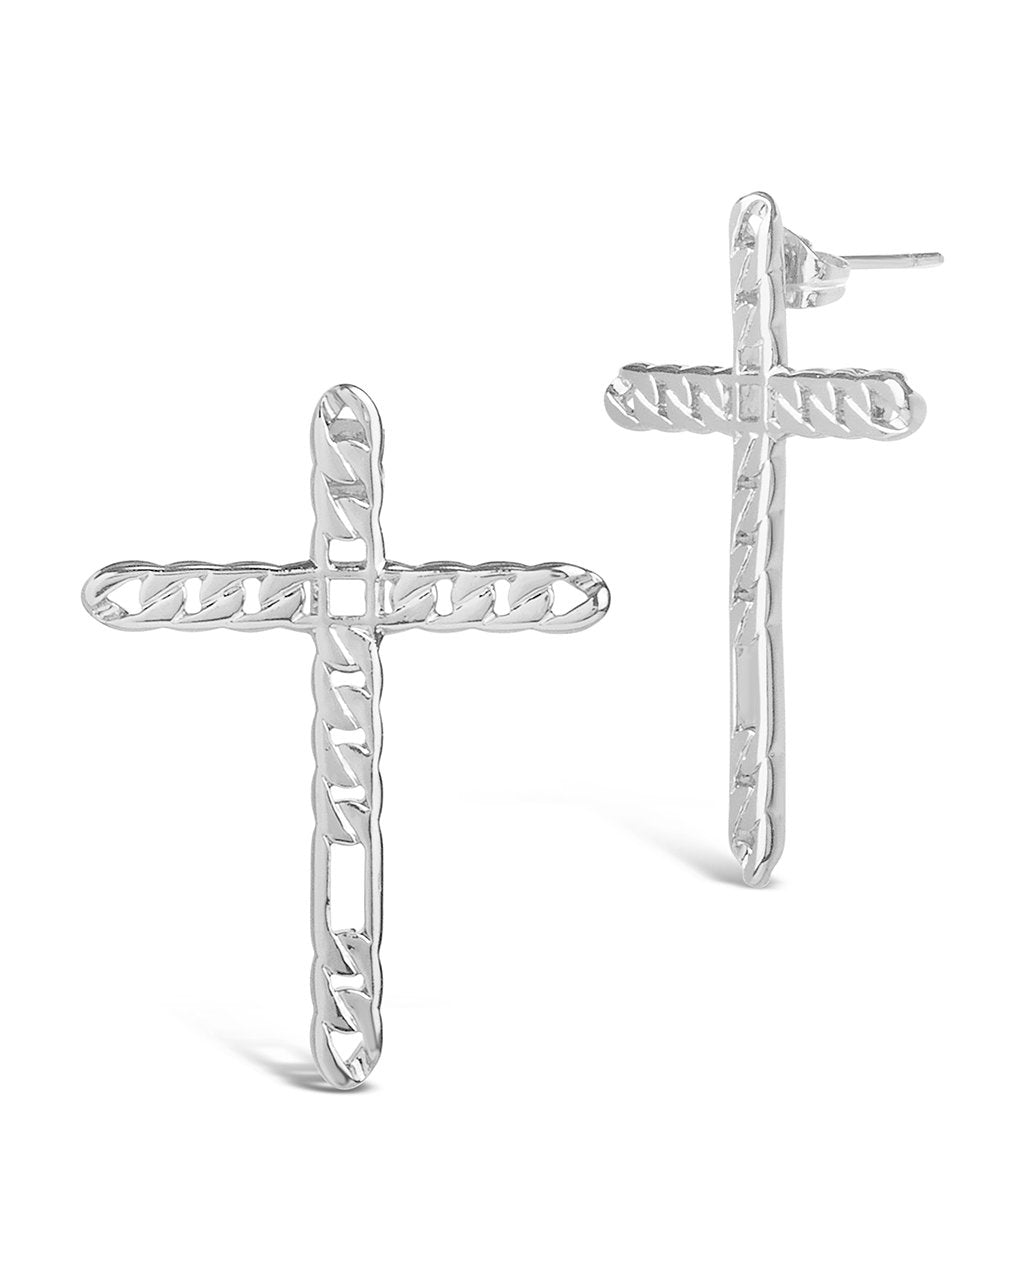 Linked Cross Earrings - Sterling Forever